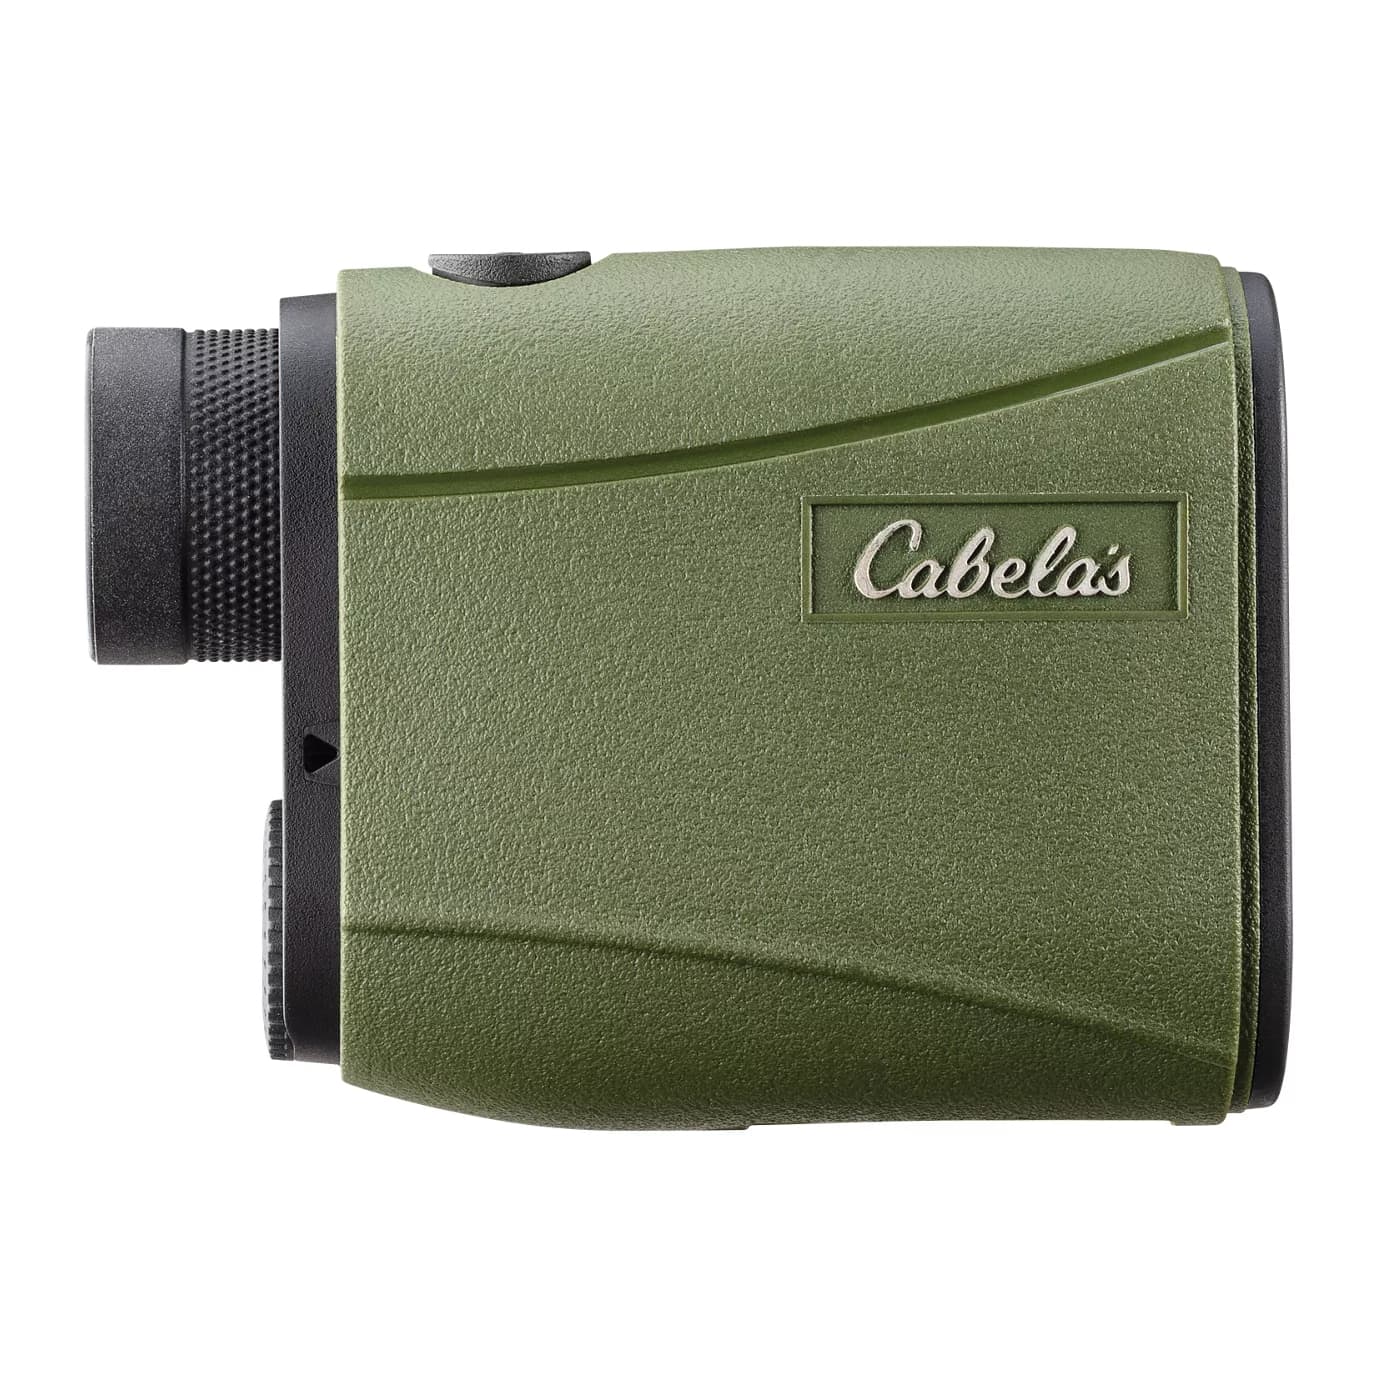 Cabela's® Intensity™ 1600R Laser Rangefinder